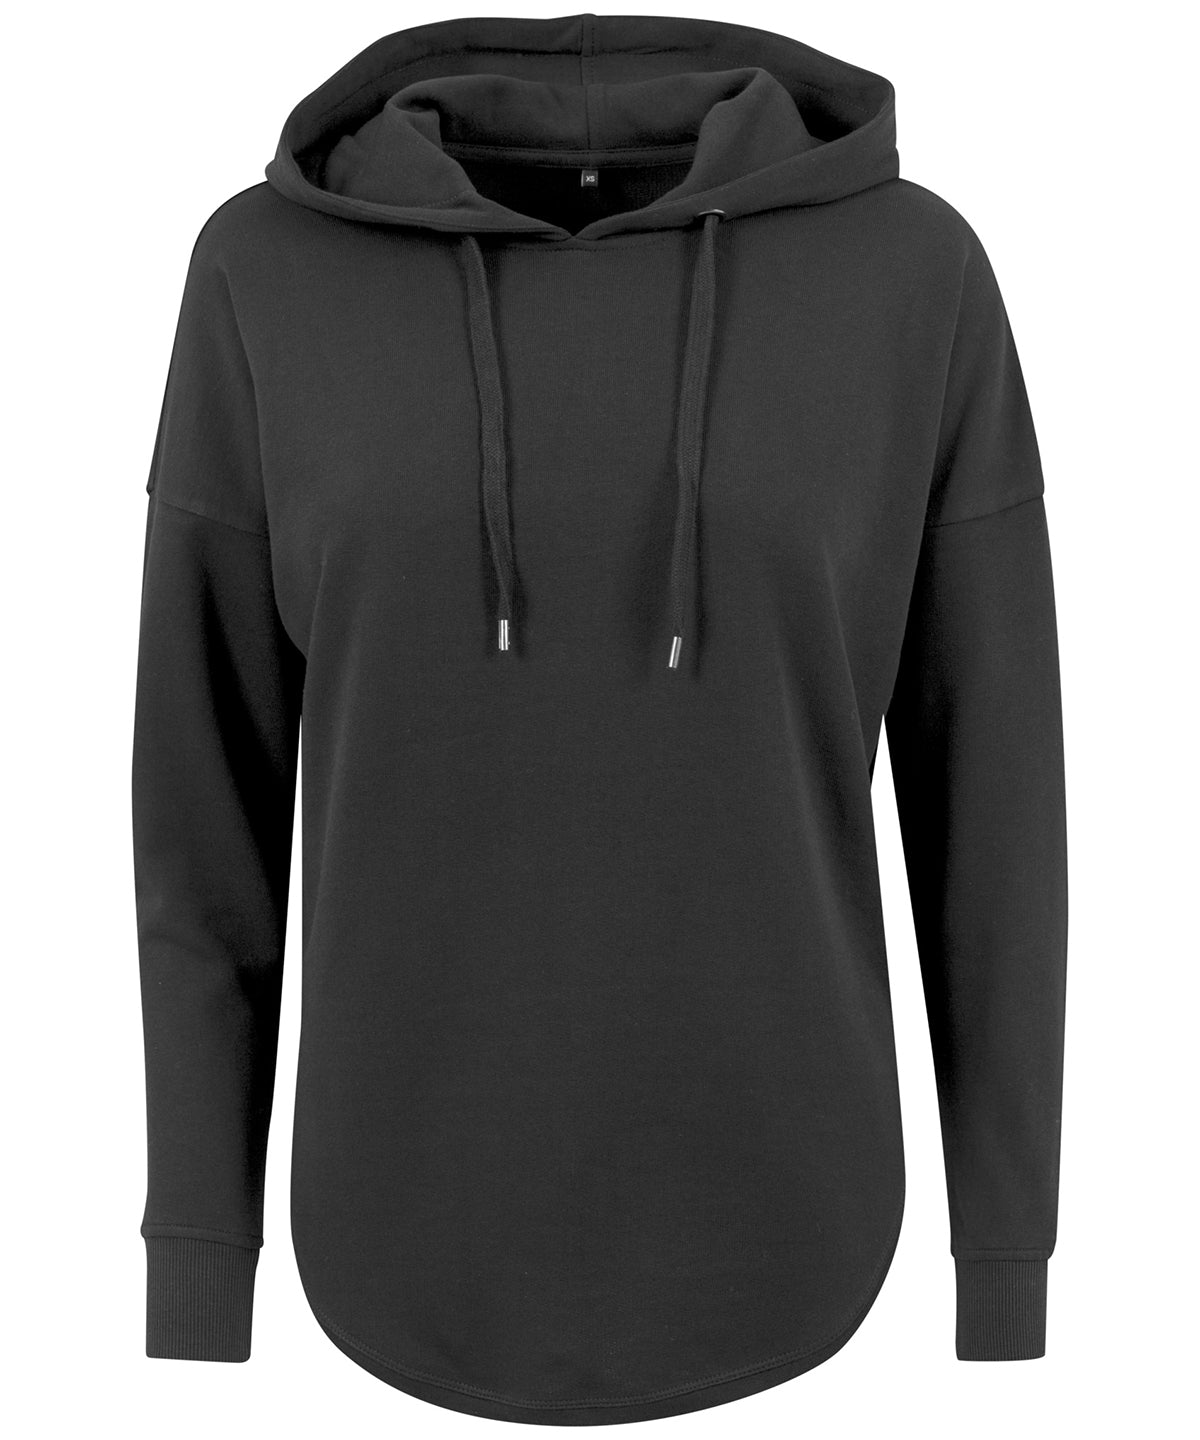 Personalised Hoodies - Black Build Your Brand Women's oversized hoodie